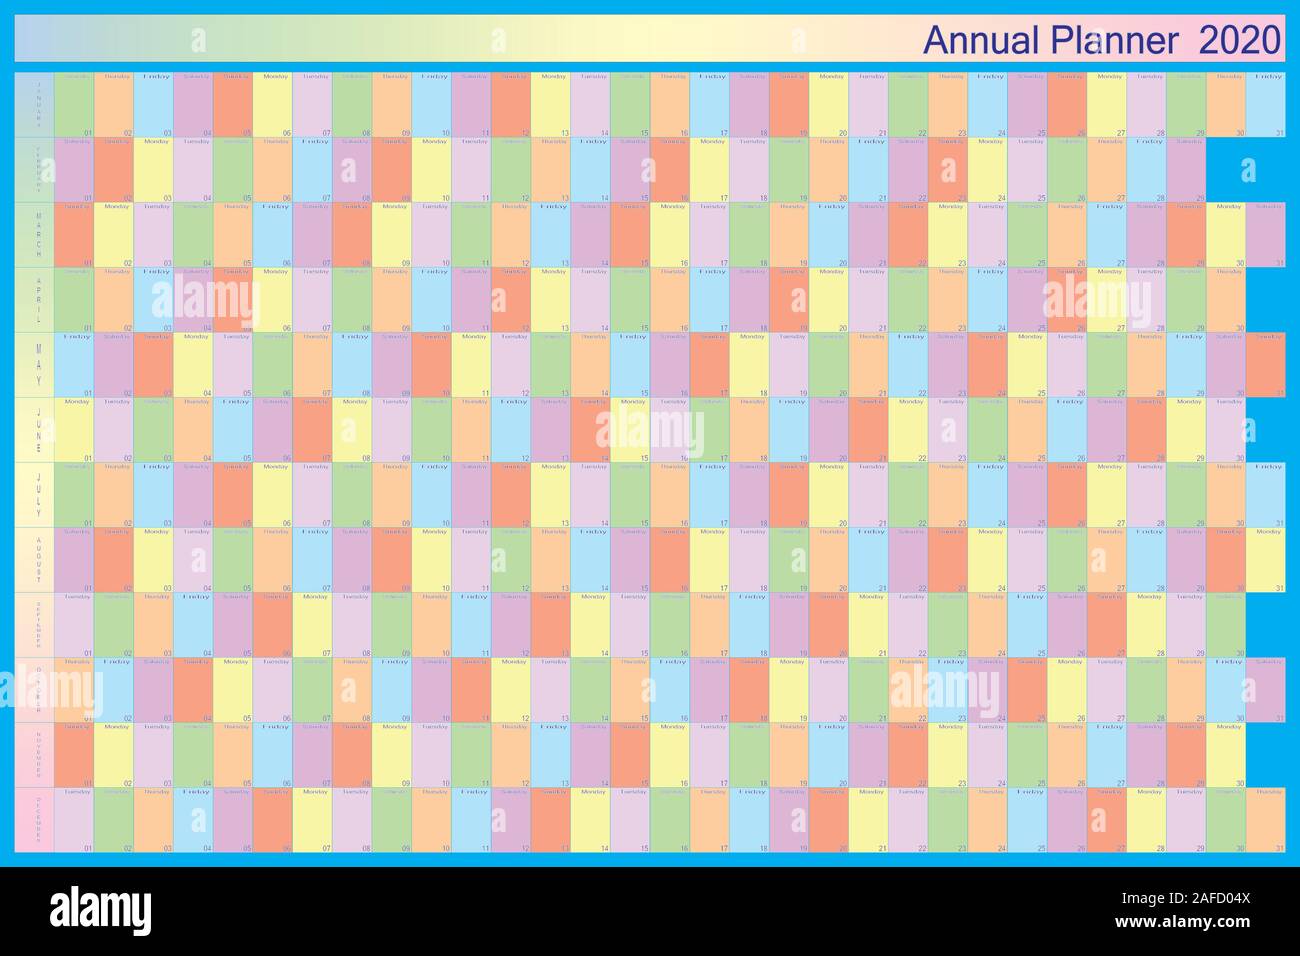 Planificateur annuel 2020 sur bleu avec des couleurs spécifiques pour chaque jour de la semaine des lettres noires avec contour blanc Illustration de Vecteur